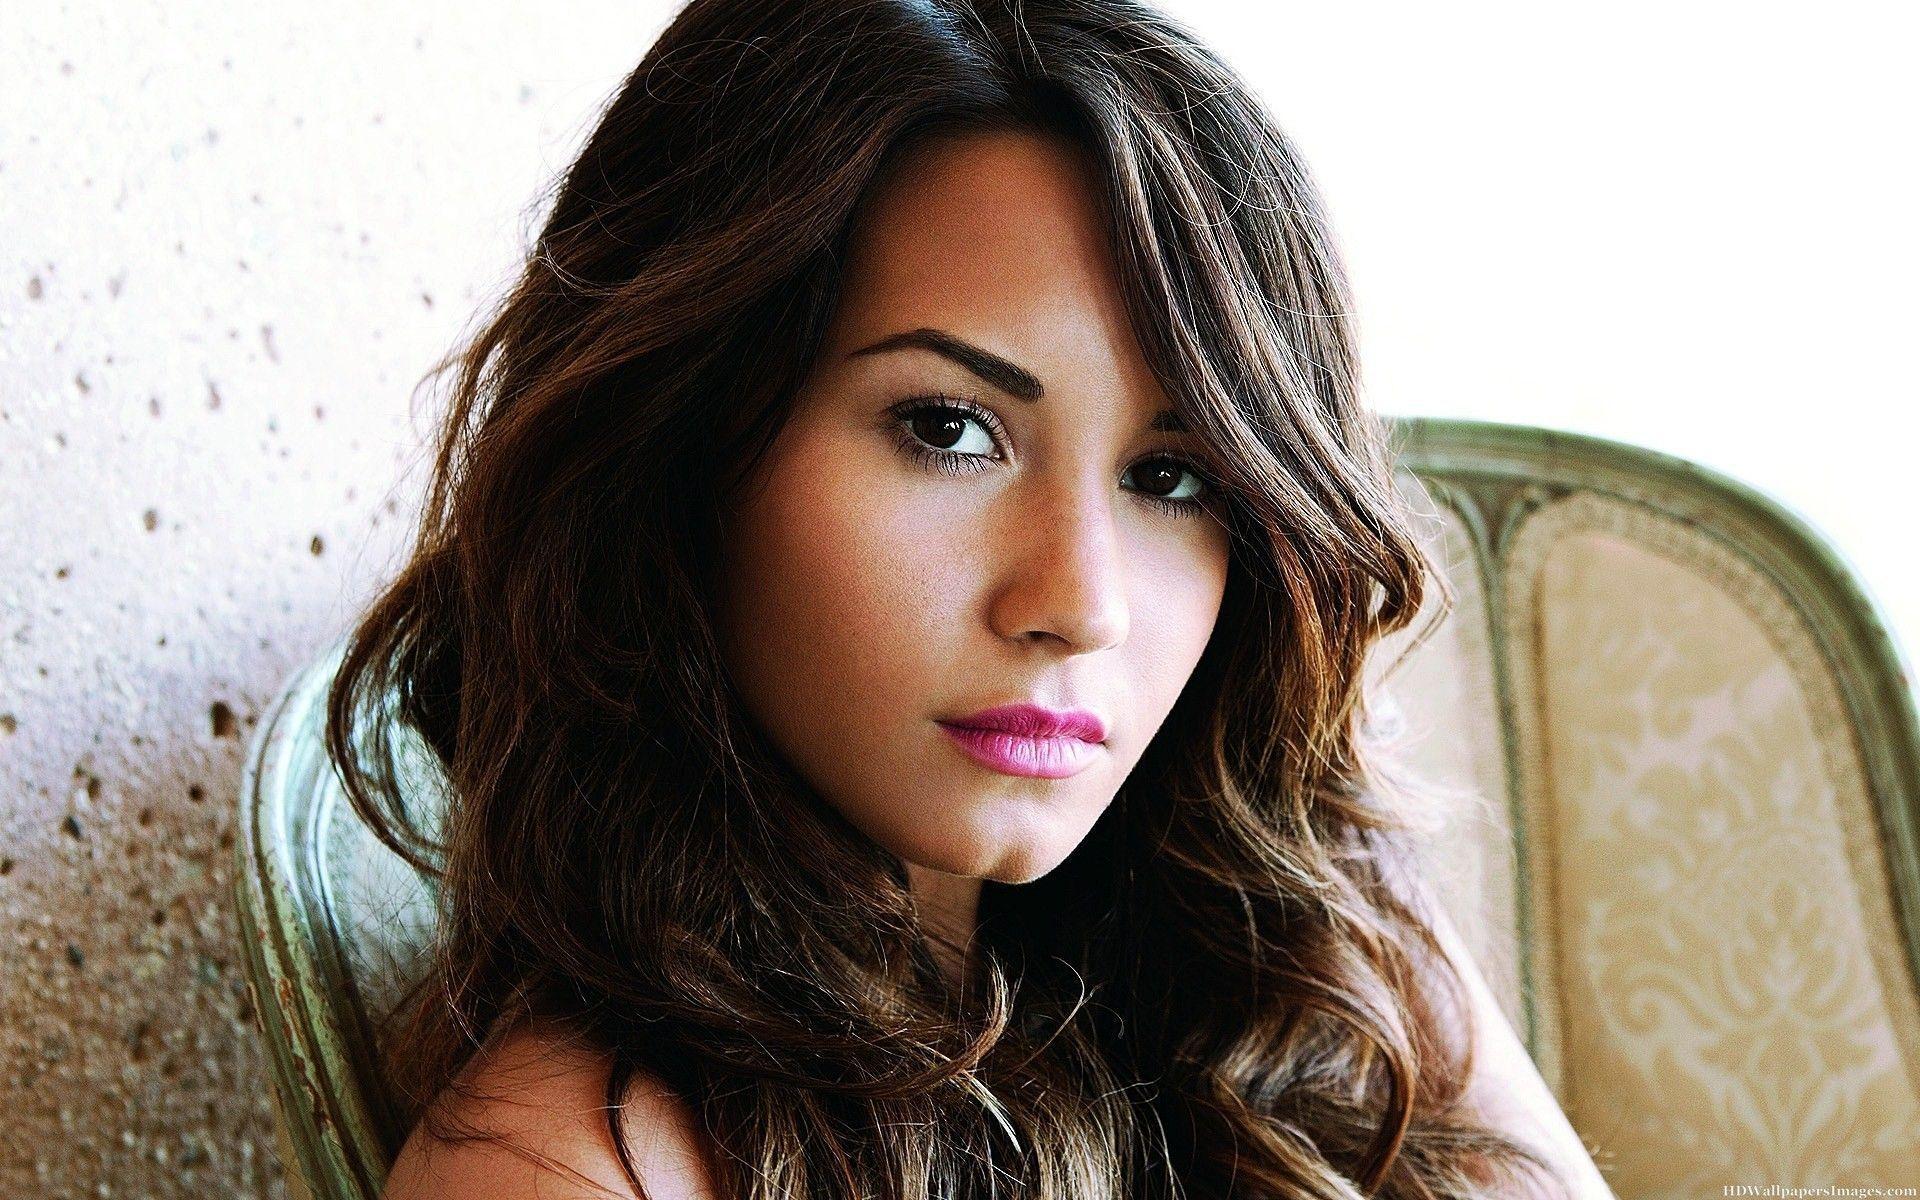 Demi Lovato 2015 Image. HD Wallpaper Image